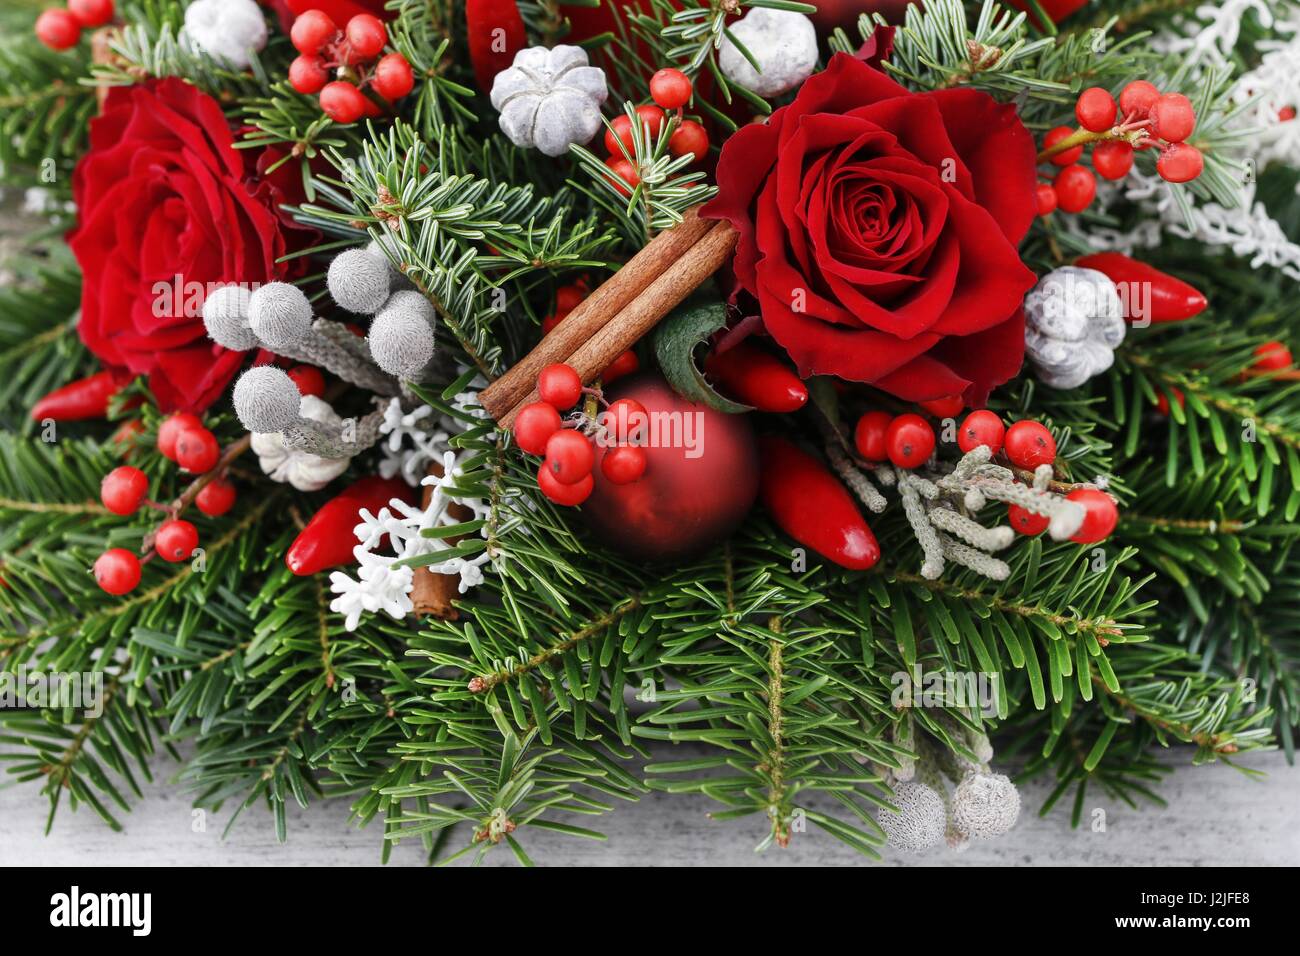 Weihnachts-Dekoration mit roten Rosen, Tanne, Brunia und Zimtstangen.  Festliche Zeit Stockfotografie - Alamy